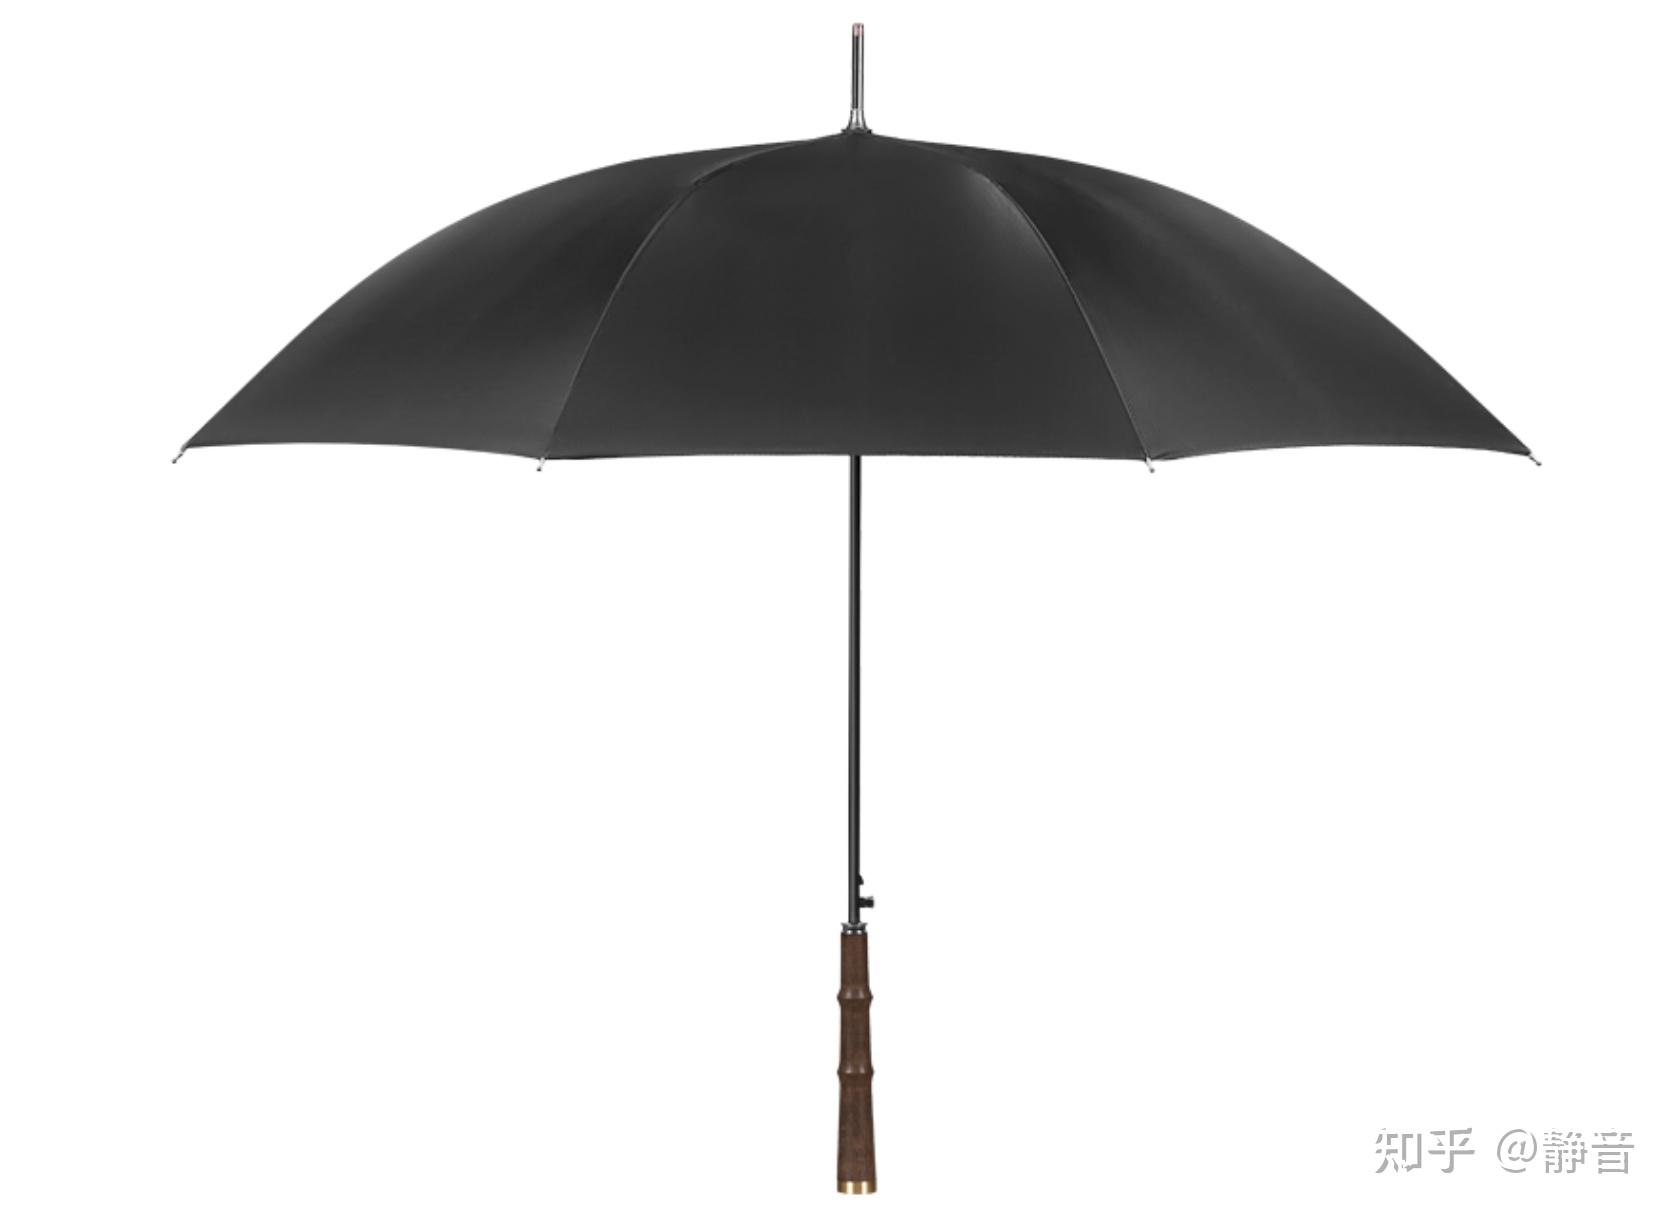 9H,清凉,胶囊伞,雨伞,遮阳伞,防晒伞,防晒,晴雨伞,黑胶伞,黑胶,迷你伞,女士伞